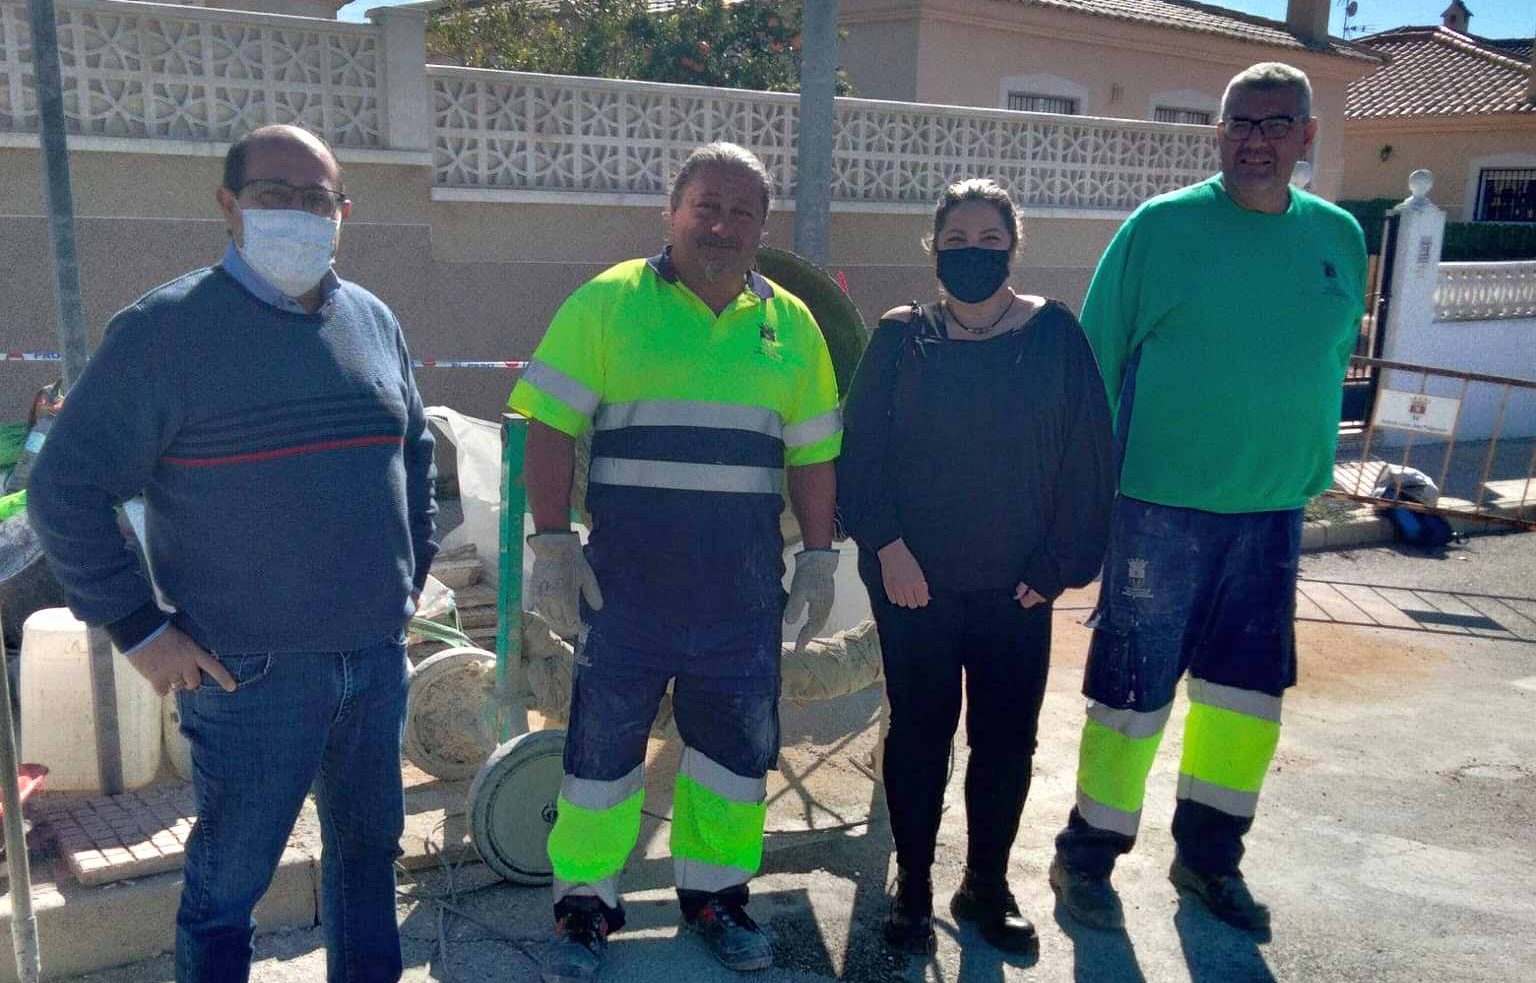 San Fulgencio contrata a dos personas desempleadas a través del programa de empleo Ecovid